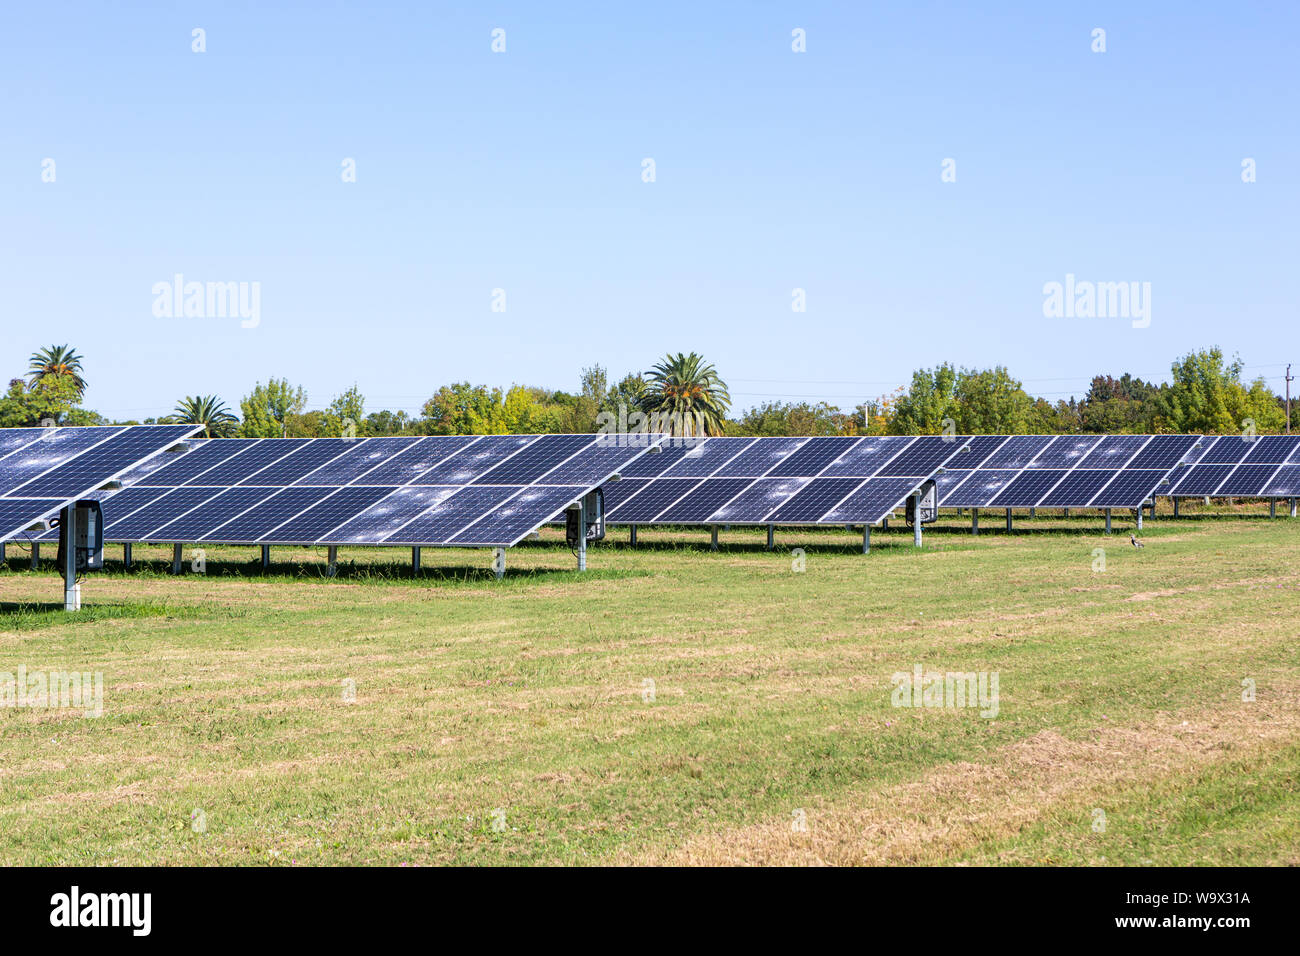 Querformat von Solarzellen in Farm mithilfe sauberer und erneuerbarer Energie an sonnigen Sommertag. Umwelt Konzept, Null CO2-Emission, sauber electri Stockfoto